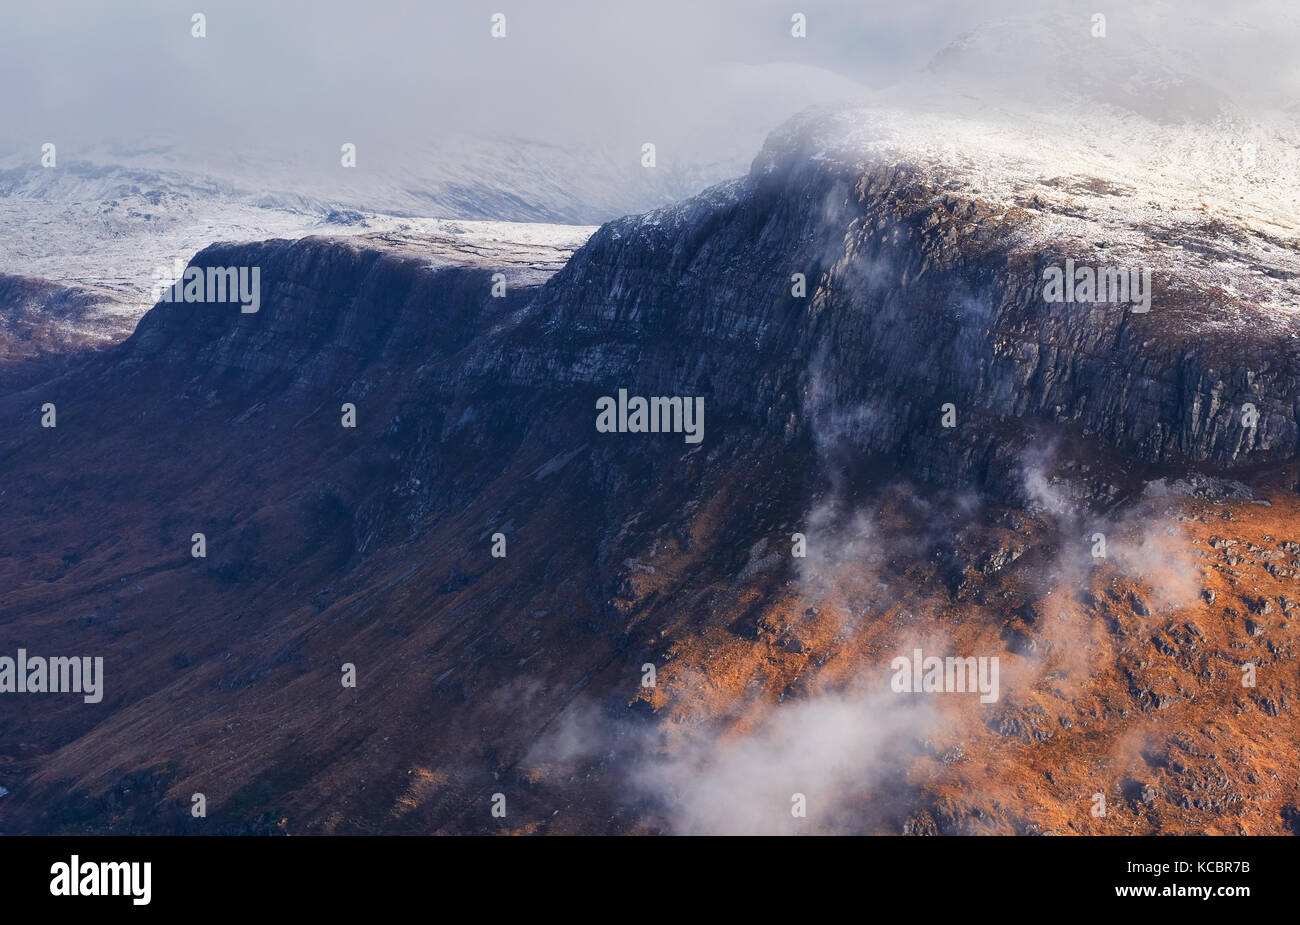 Eine Schnee- und Wolke bedeckte Gipfel des Beinn a Mhuinidh oben Loch Maree in den schottischen Highlands, Schottland, Großbritannien. Stockfoto